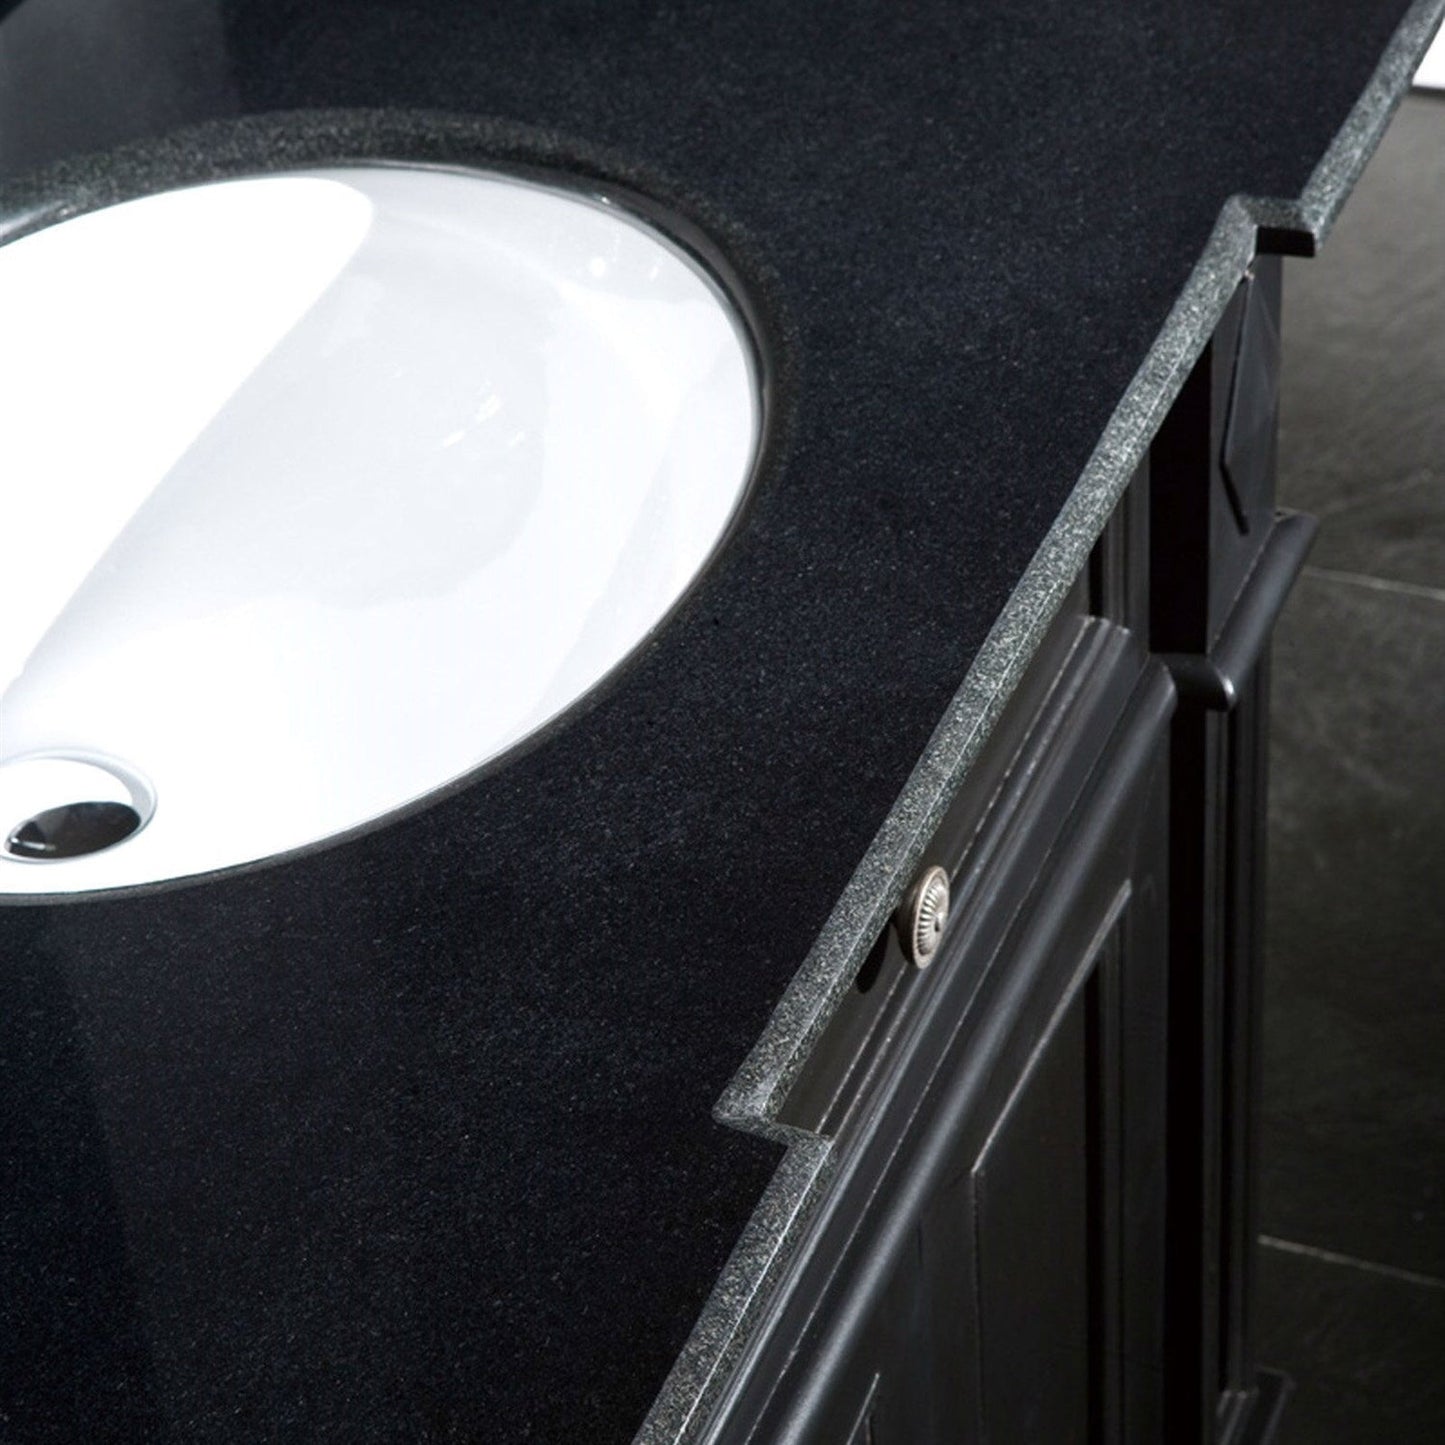 Bathroom > Bathroom Vanities - Single Sink Bathroom Vanity With Cabinet & Black Granite Countertop / Backsplash